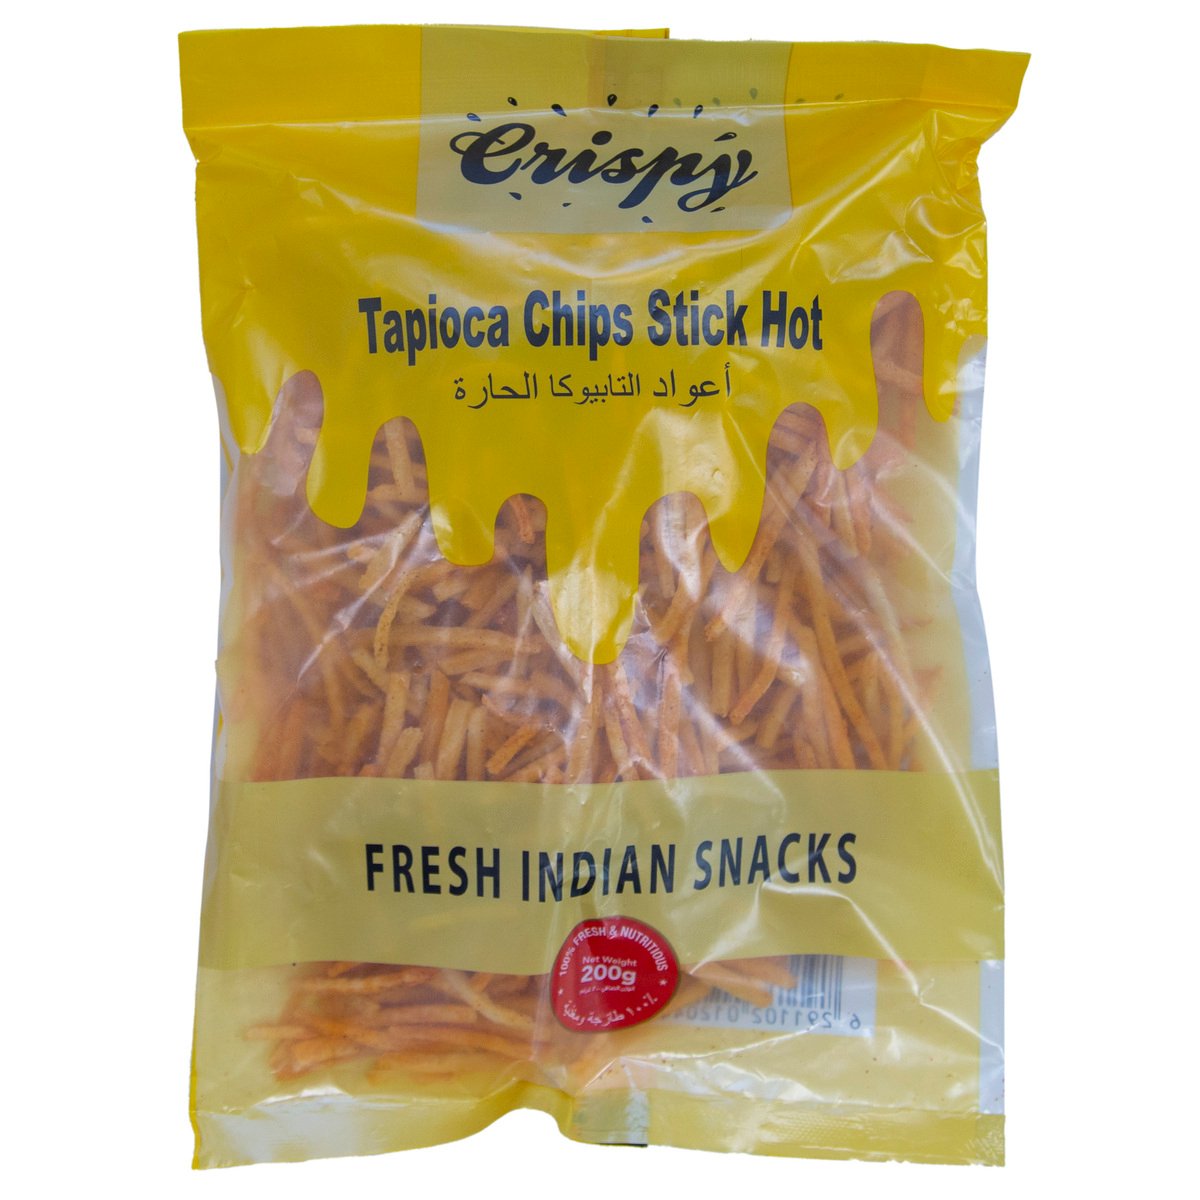 Crispy Hot Tapioca Chips Stick 200g